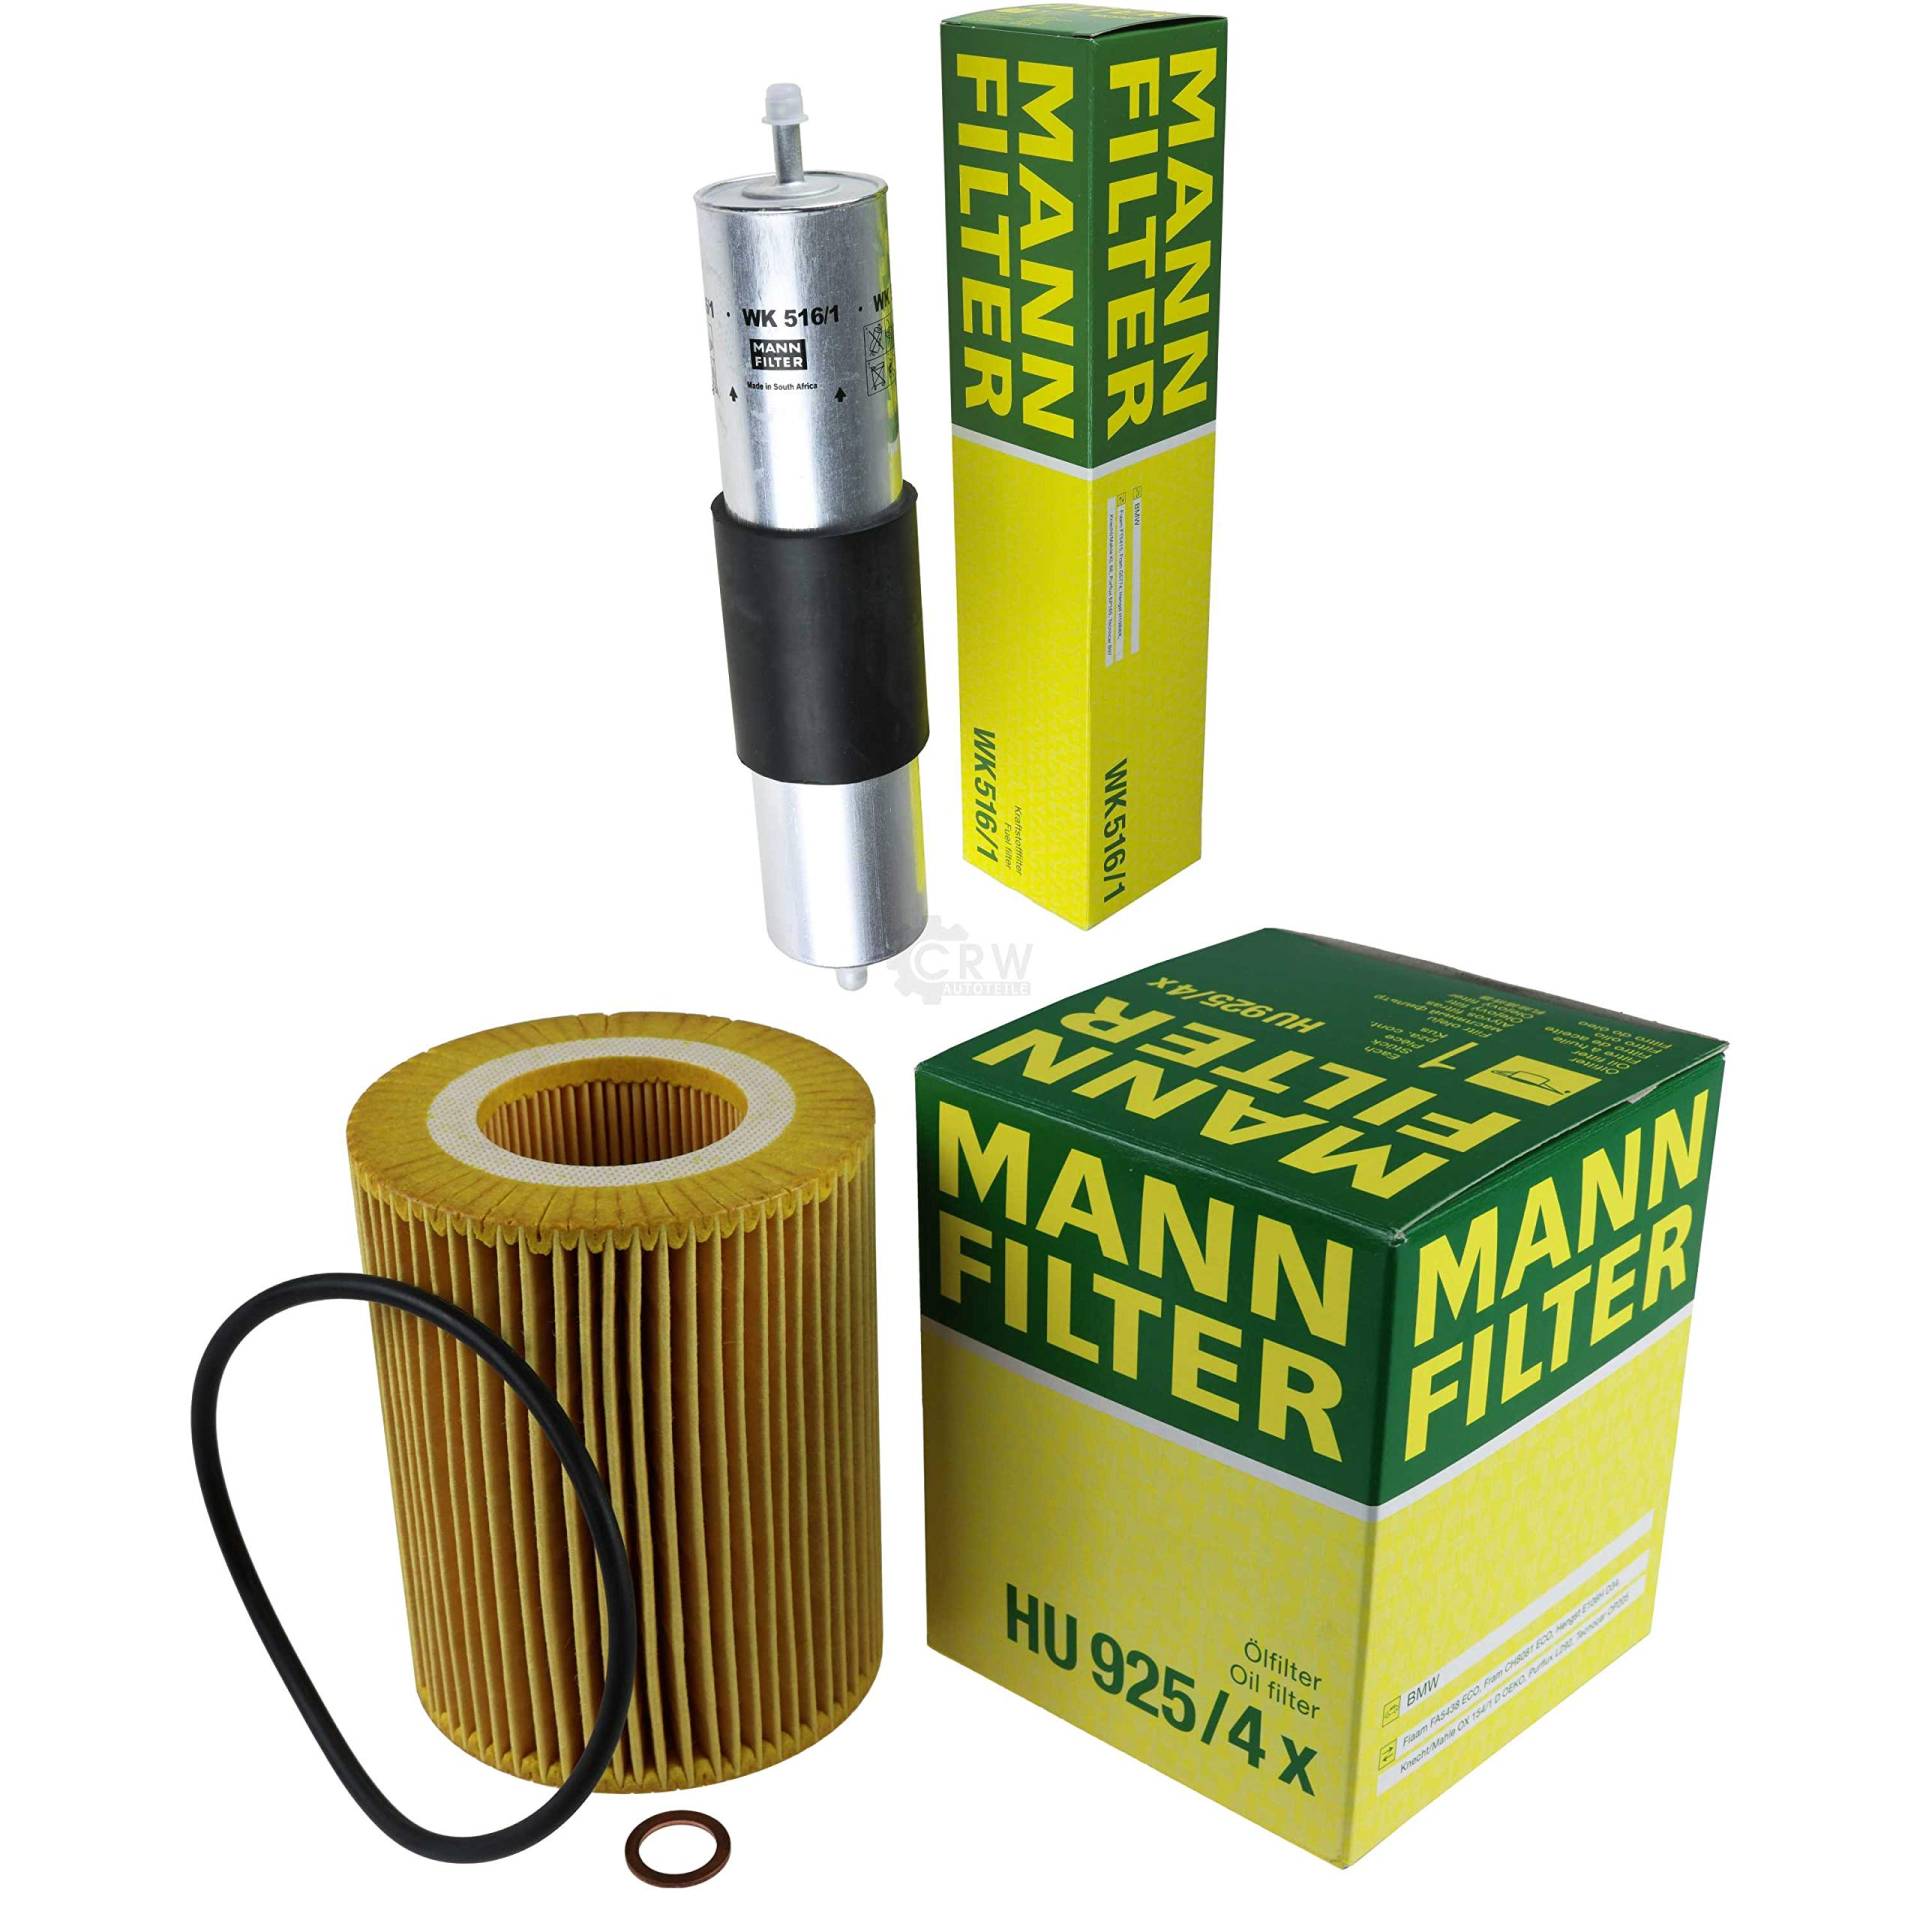 MANN-FILTER Inspektions Set Inspektionspaket Ölfilter Kraftstofffilter von Diederichs